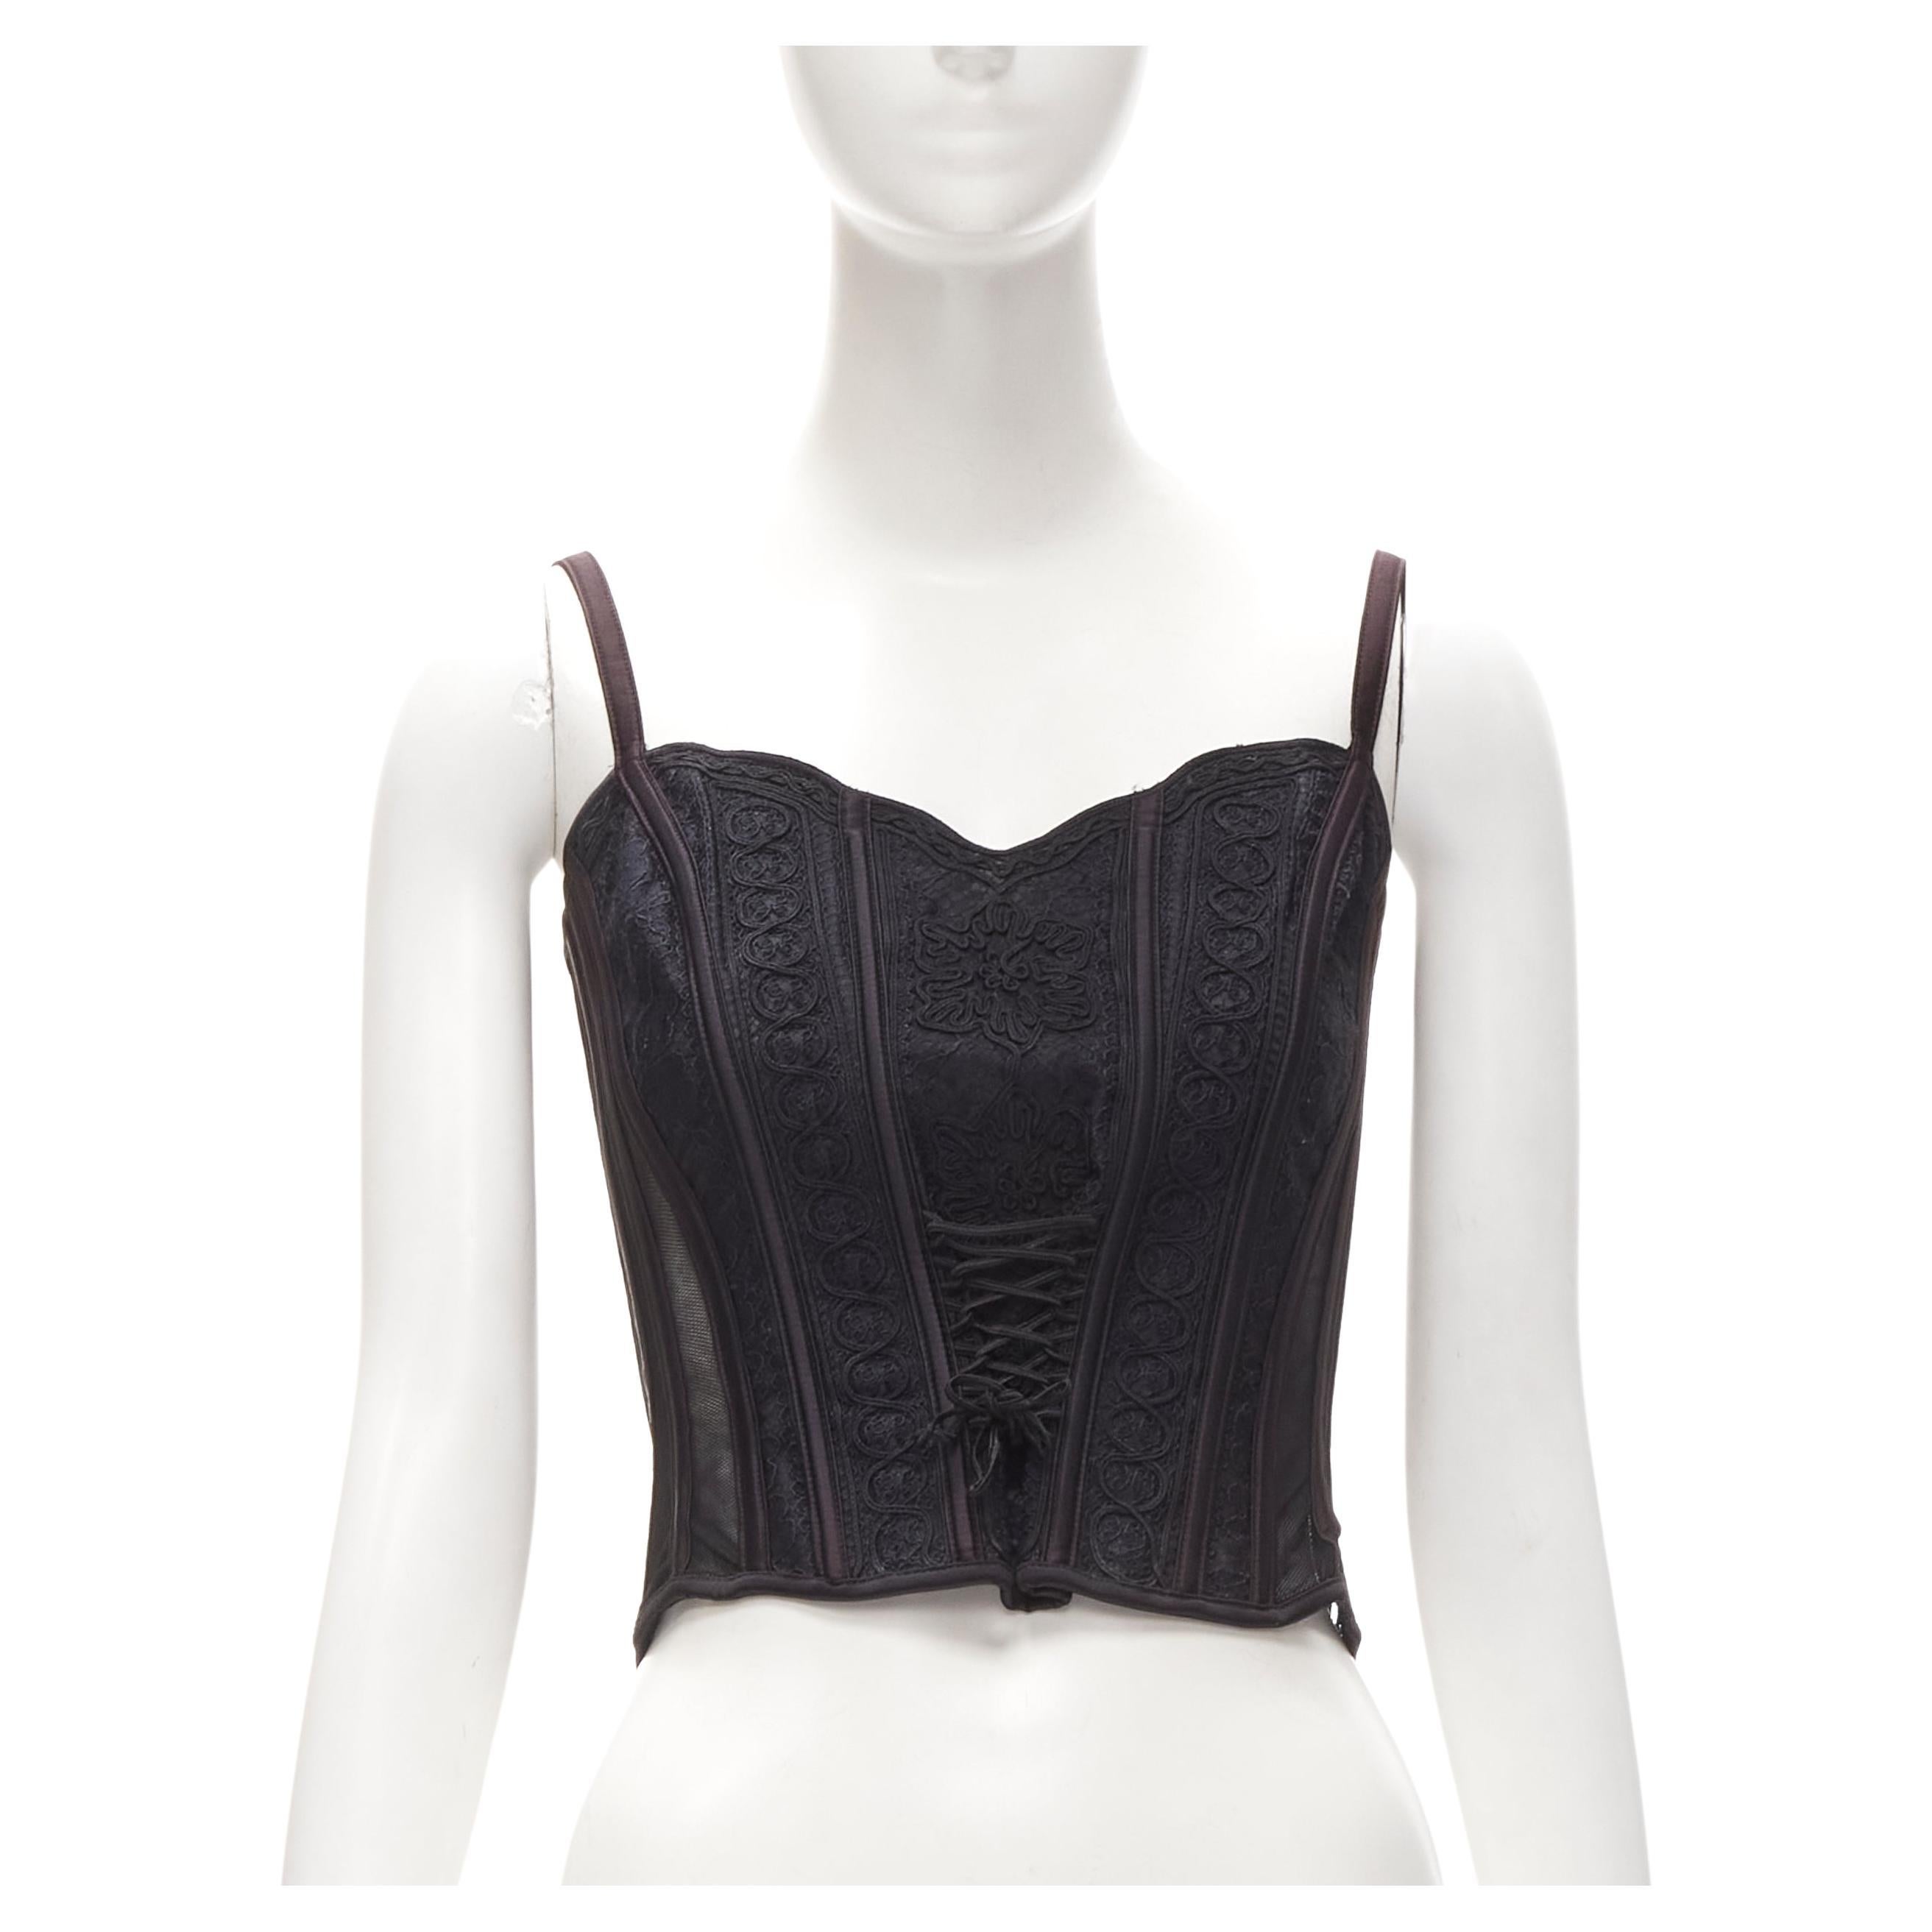 RITMO DI PERLA LA PERLA Vintage black embroidery boned corset top IT40 S